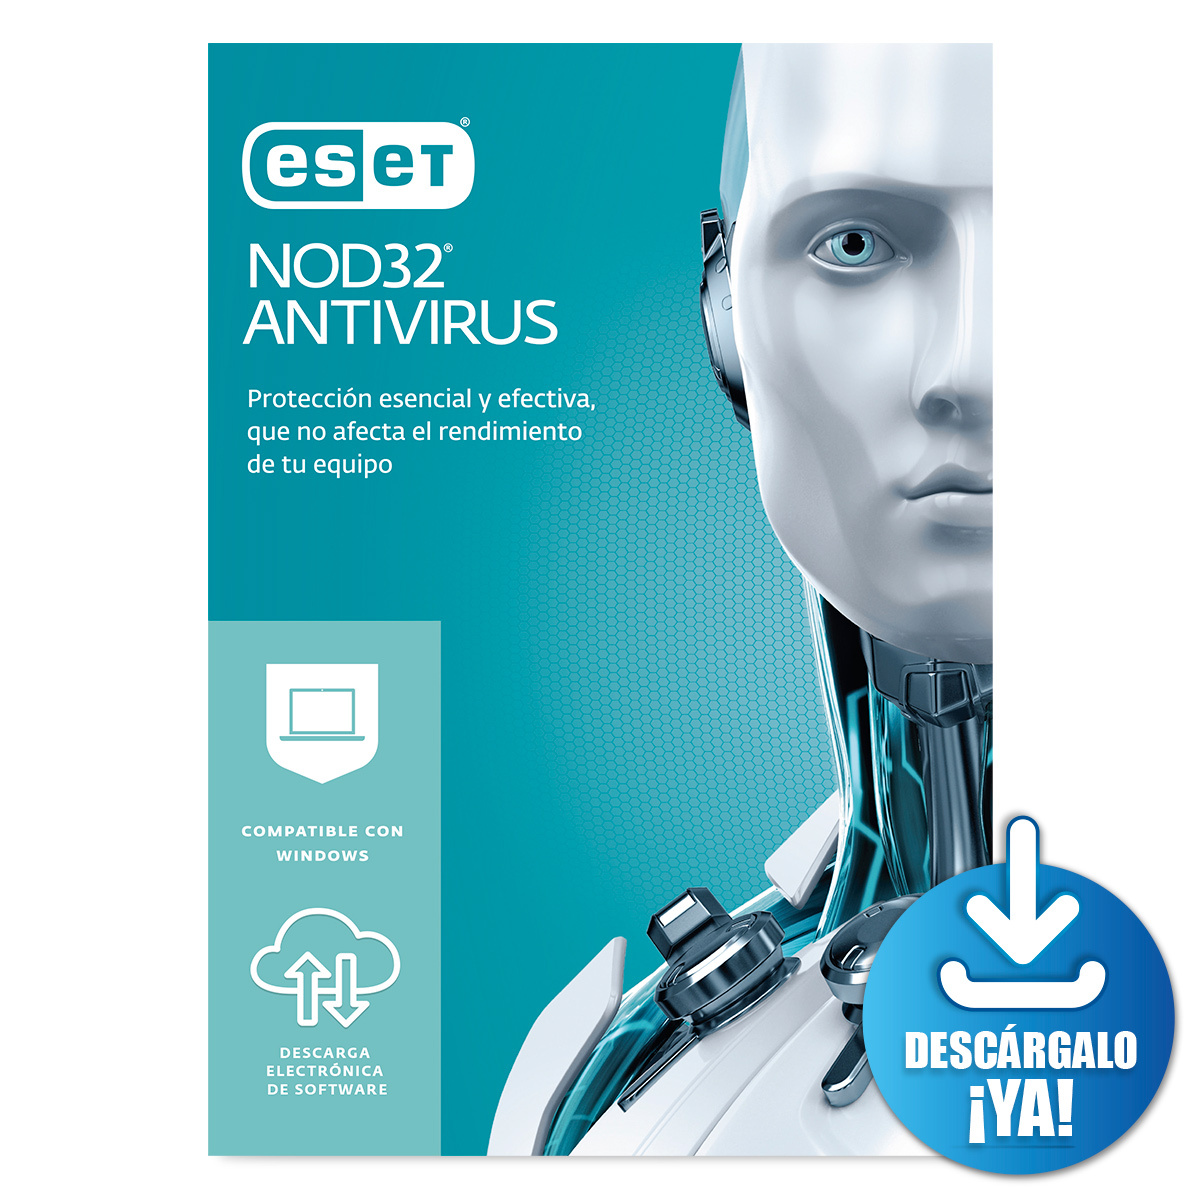 Antivirus ESET Nod32 Descargable / Licencia 2 años / 1 dispositivo / PC / Laptop